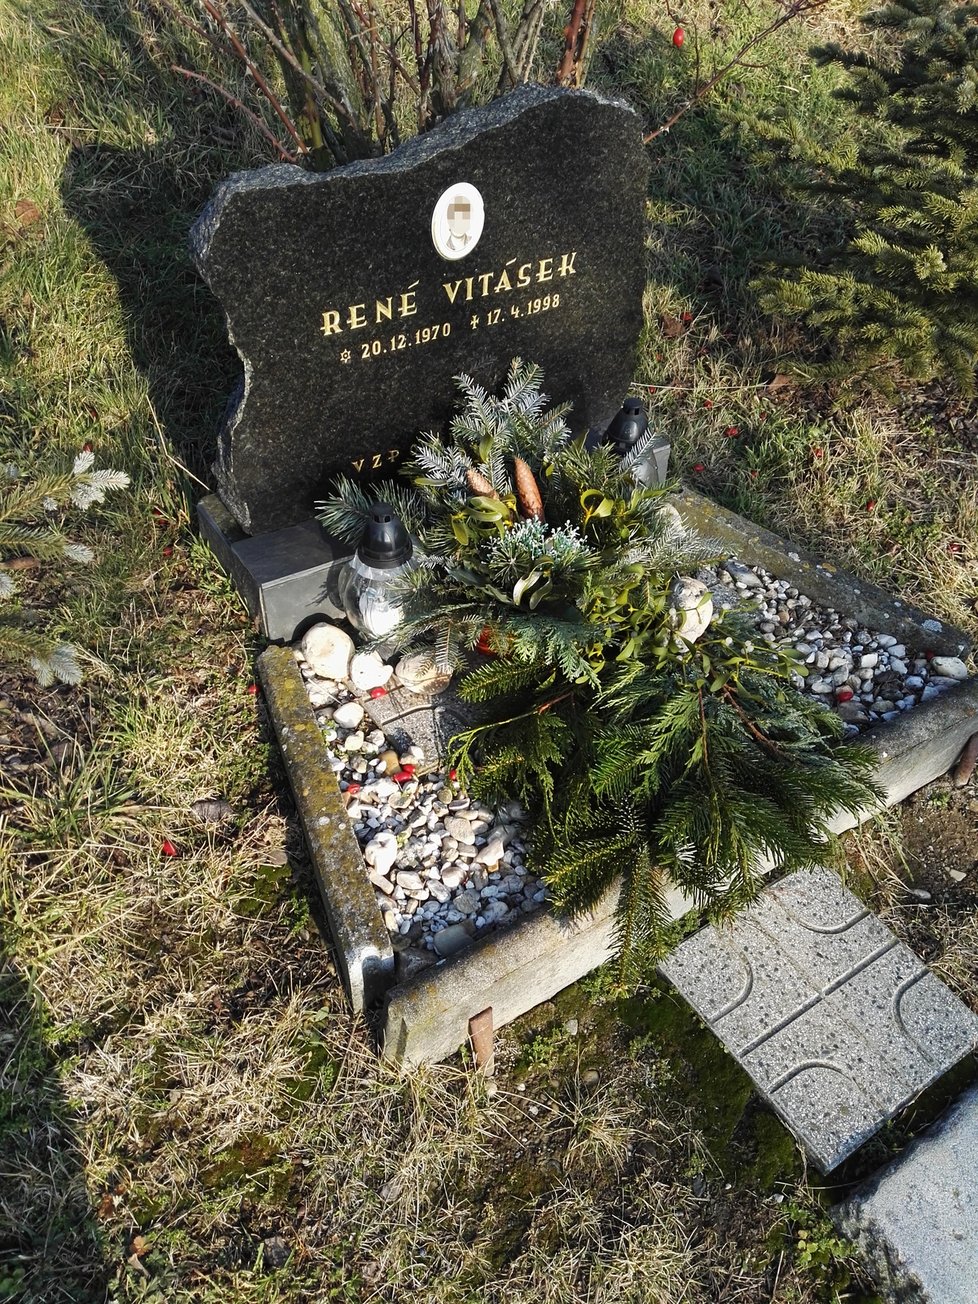 René Vitásek, starší bratr Ctirada, má pomníček v místě, kde ho zavraždili lupiči.